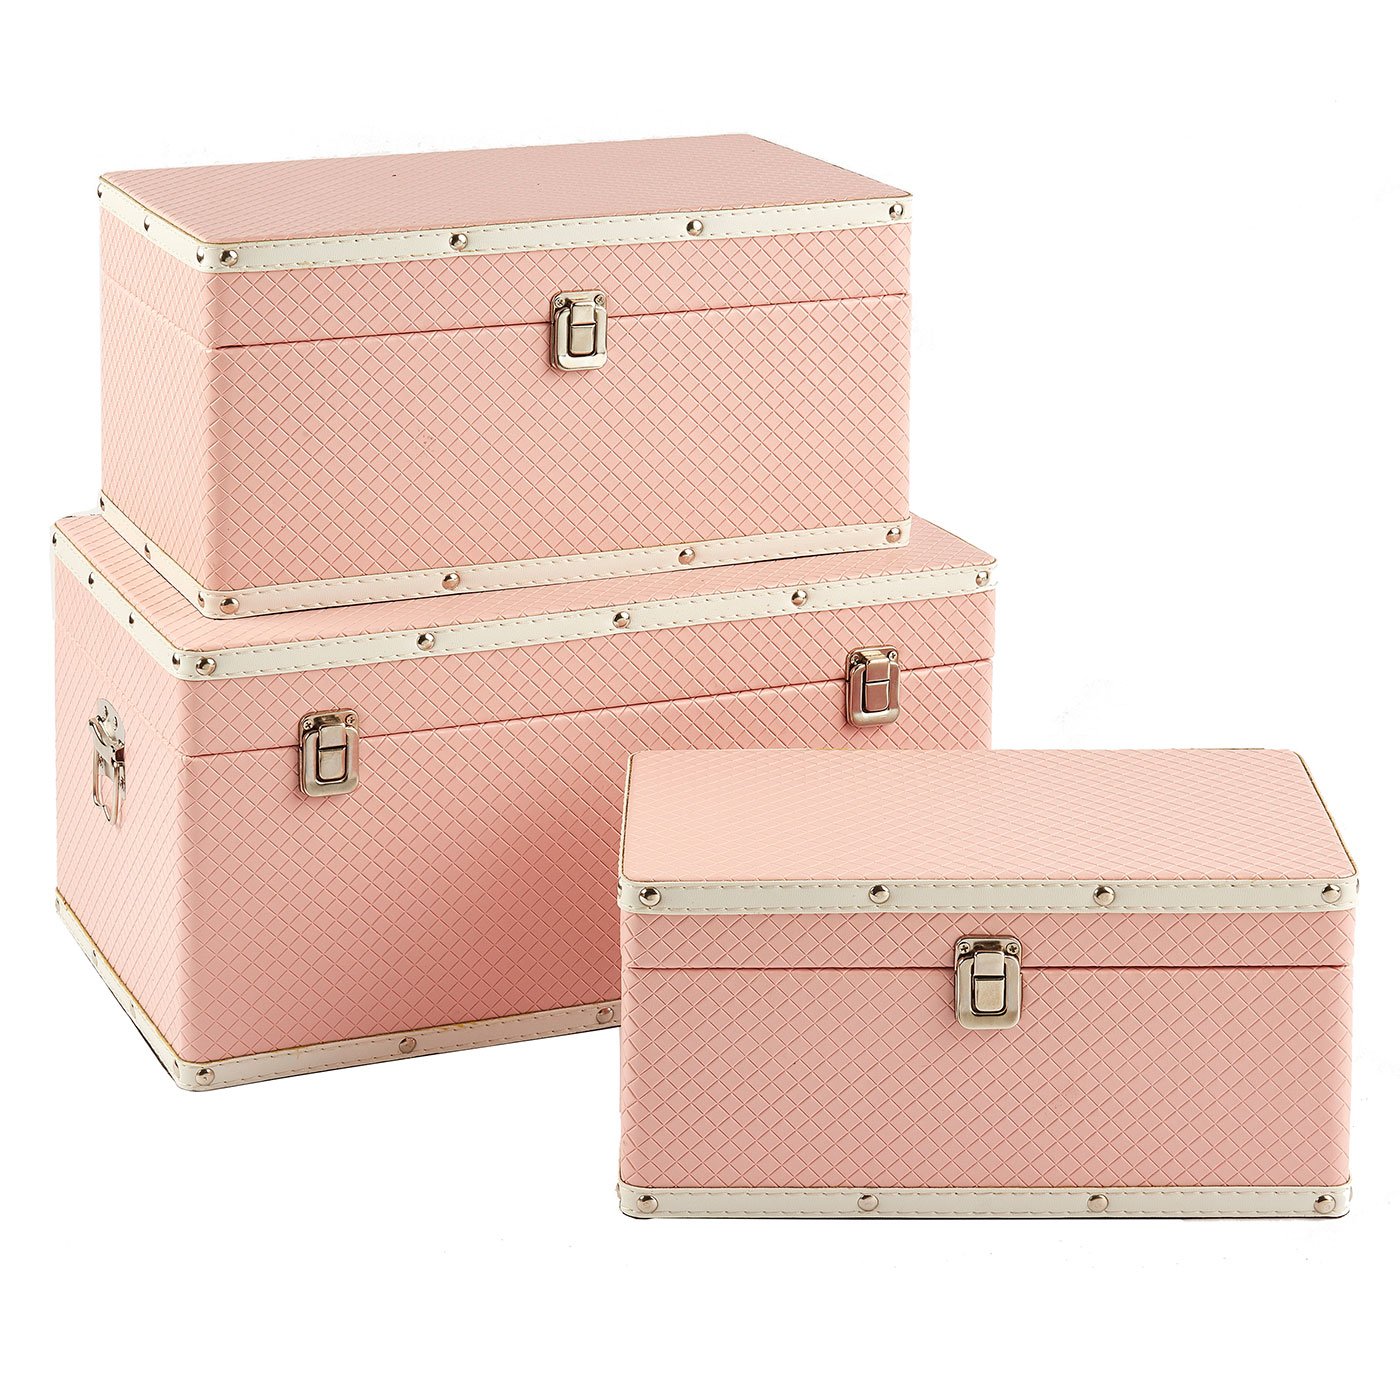 Pink Decorative Boxes Wholesale